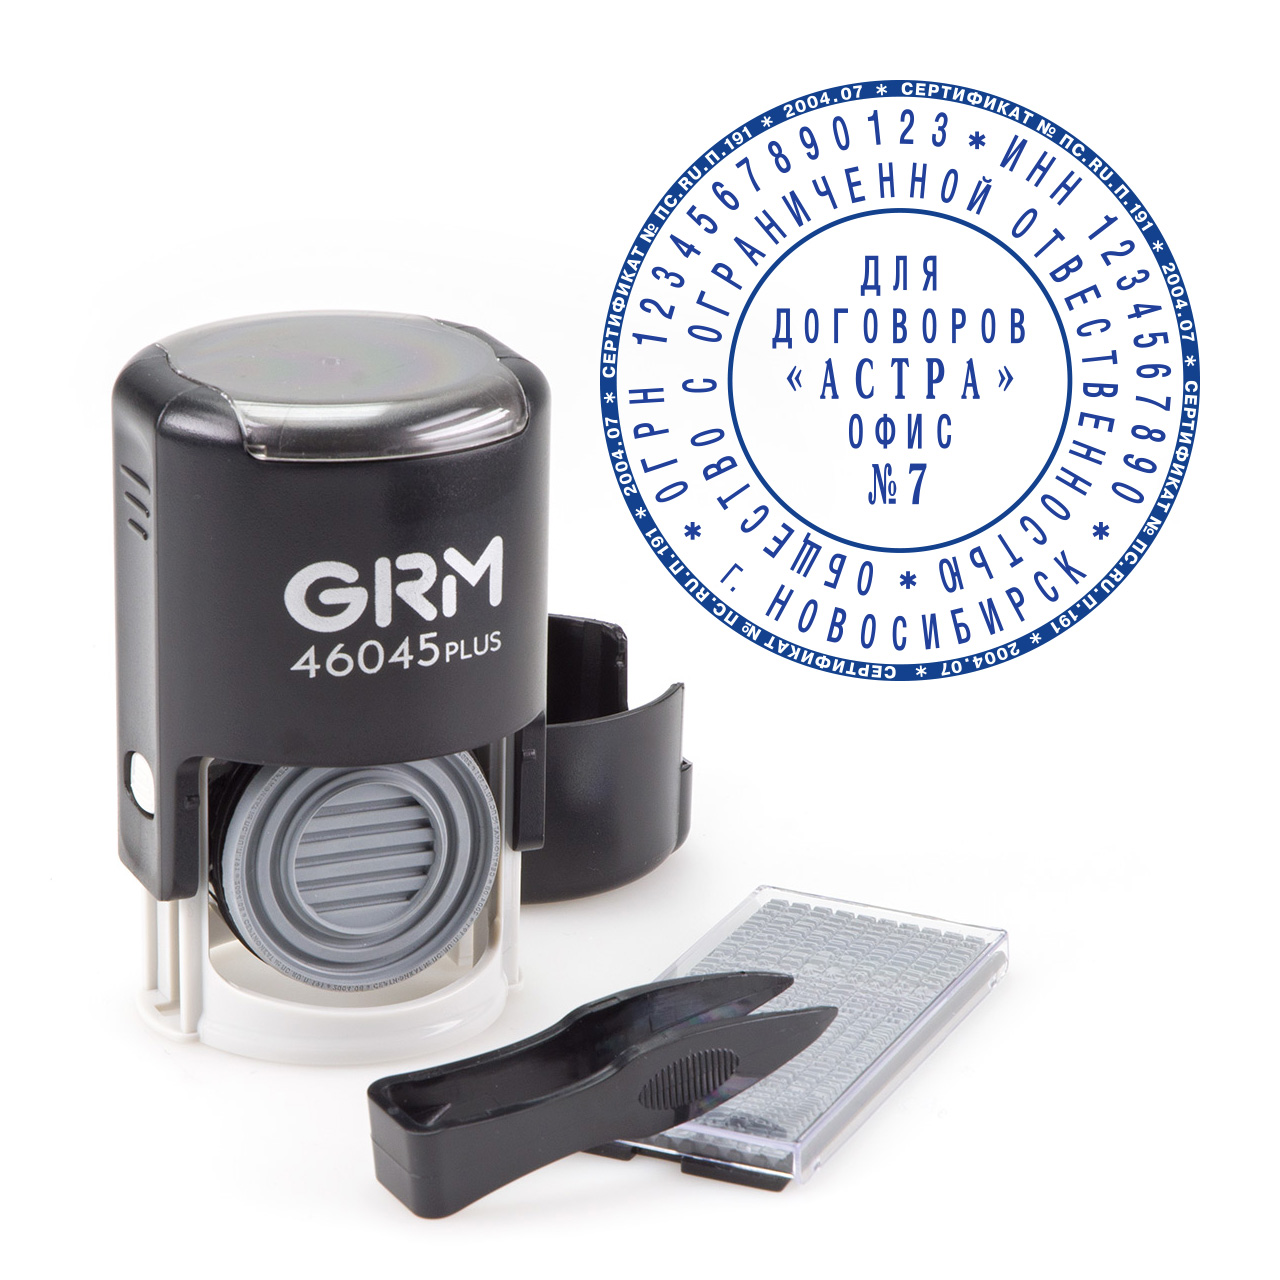 GRM 46045/2 PLUS Автоматическая самонаборная печать - 2 круга с .